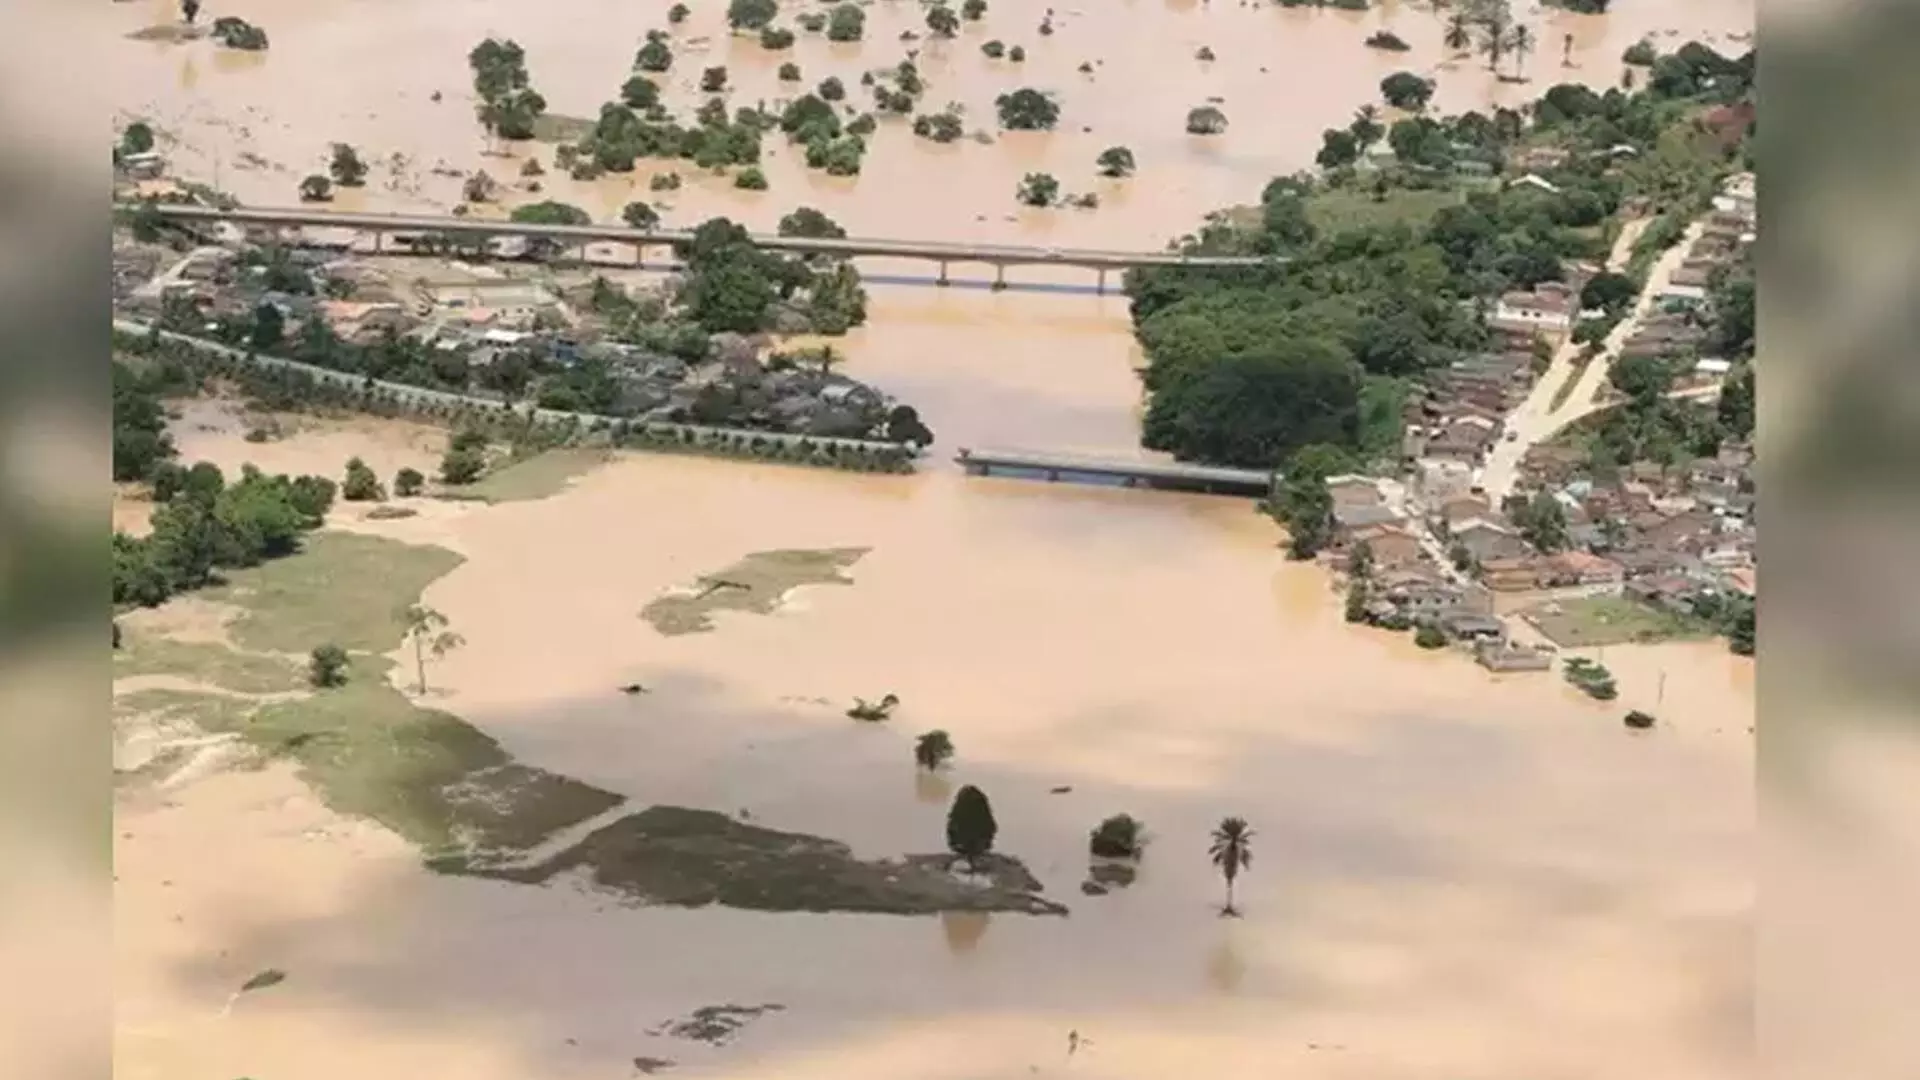 अल नीनो से जुड़ी रिकॉर्ड वर्षा के कारण ब्राज़ील में असामान्य बाढ़